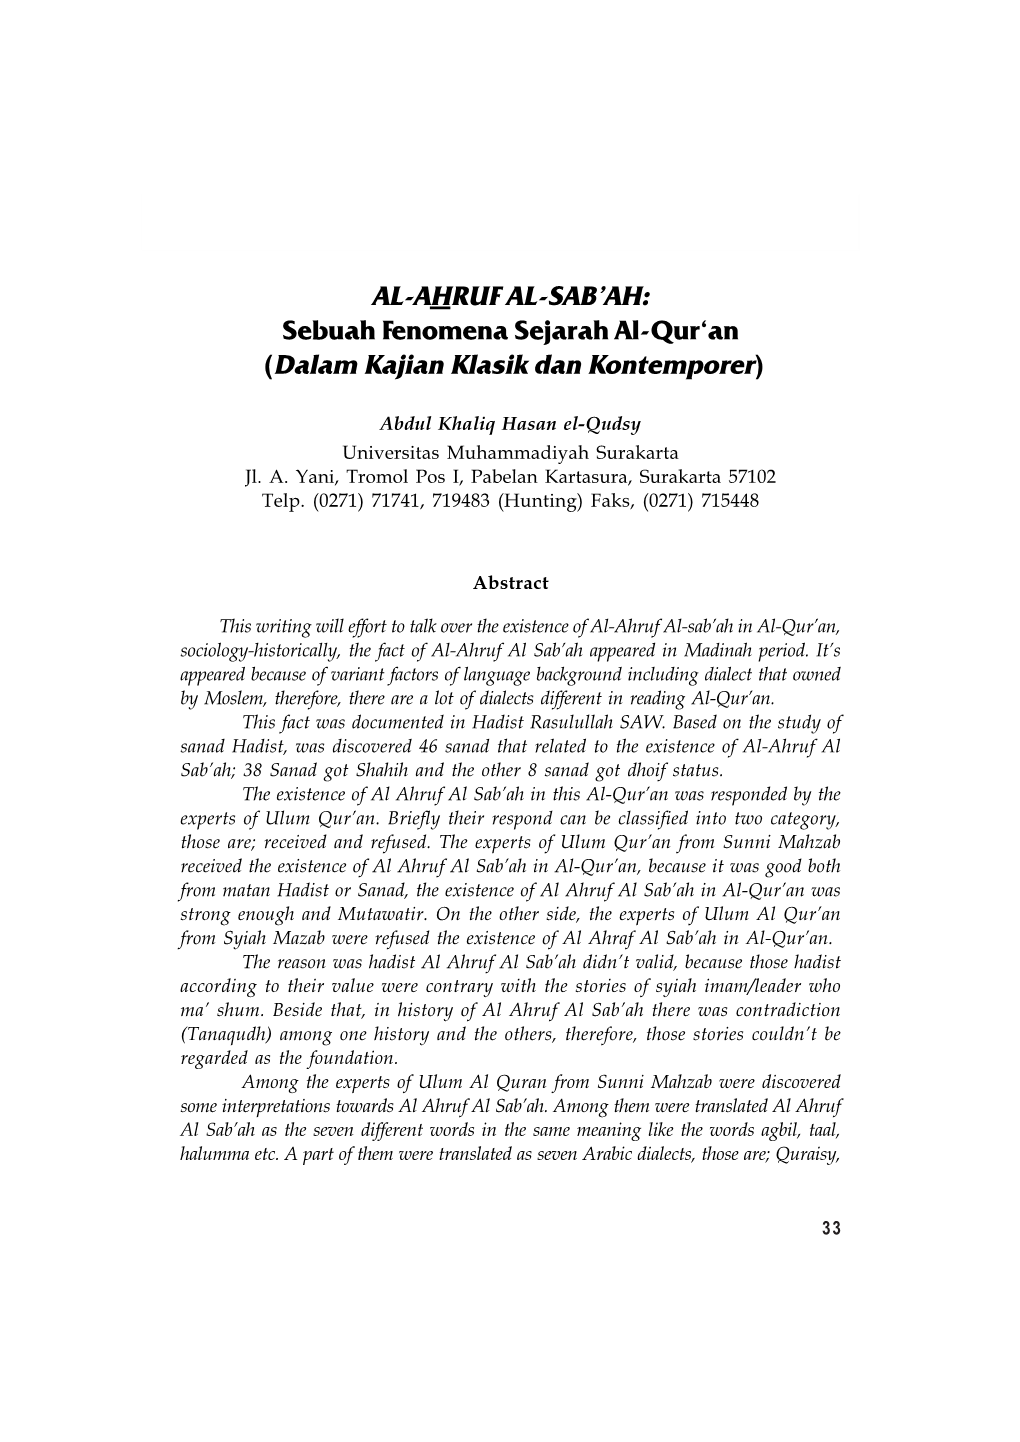 AL-AHRUF AL-SAB'ah: Sebuah Fenomena Sejarah Al-Qur'an